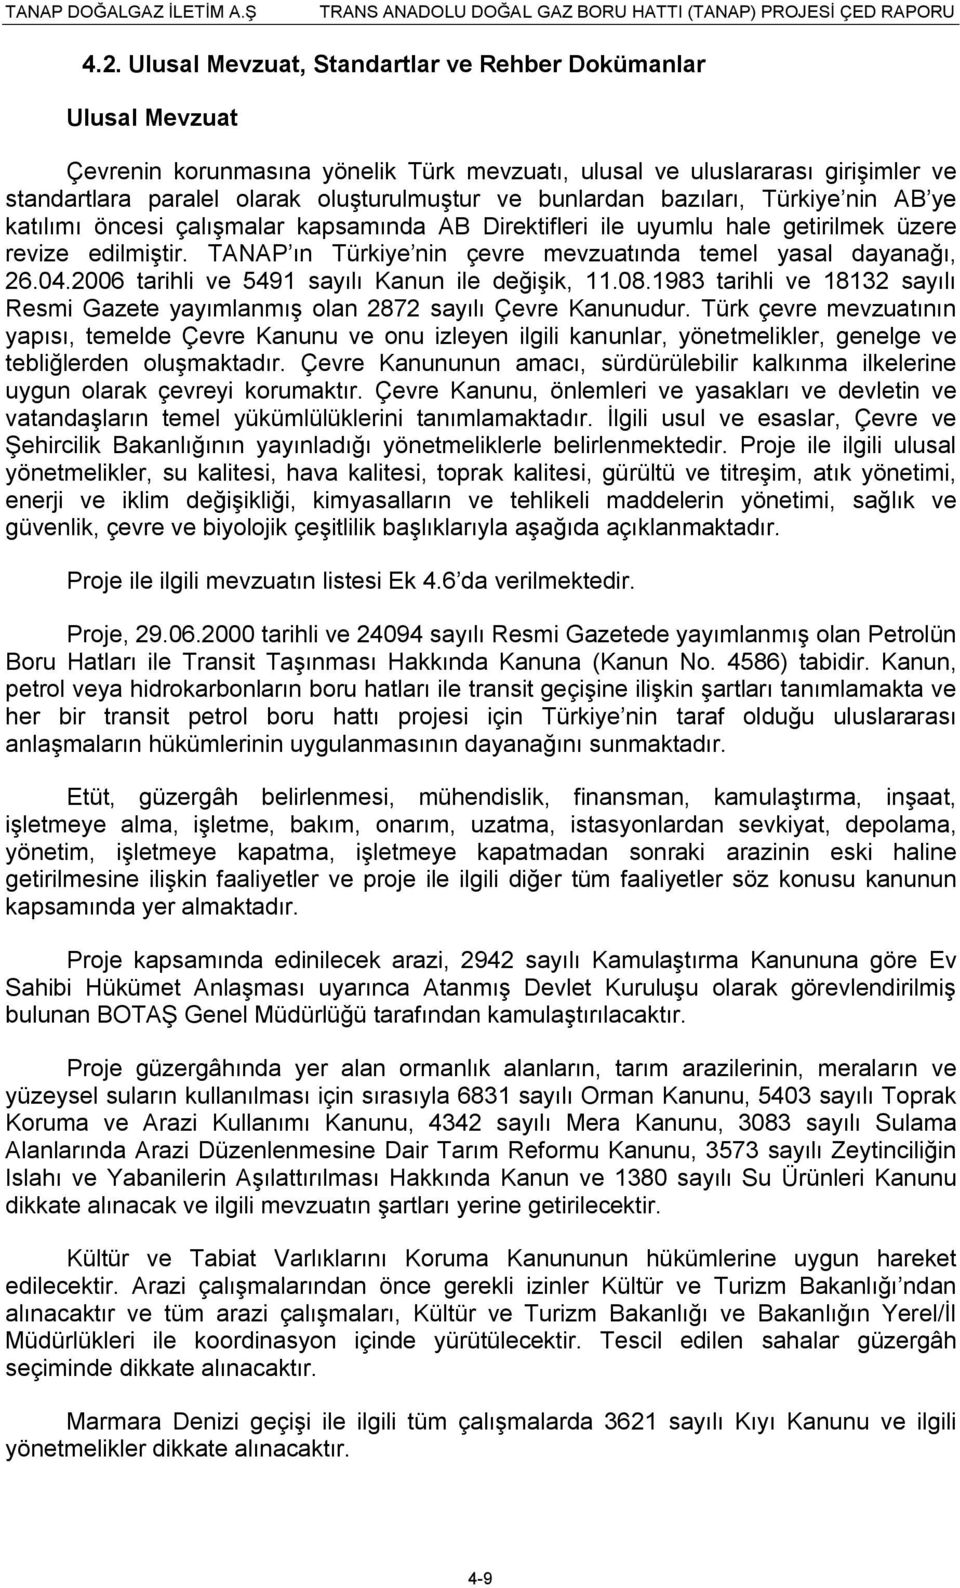 TANAP ın Türkiye nin çevre mevzuatında temel yasal dayanağı, 26.04.2006 tarihli ve 5491 sayılı Kanun ile değişik, 11.08.